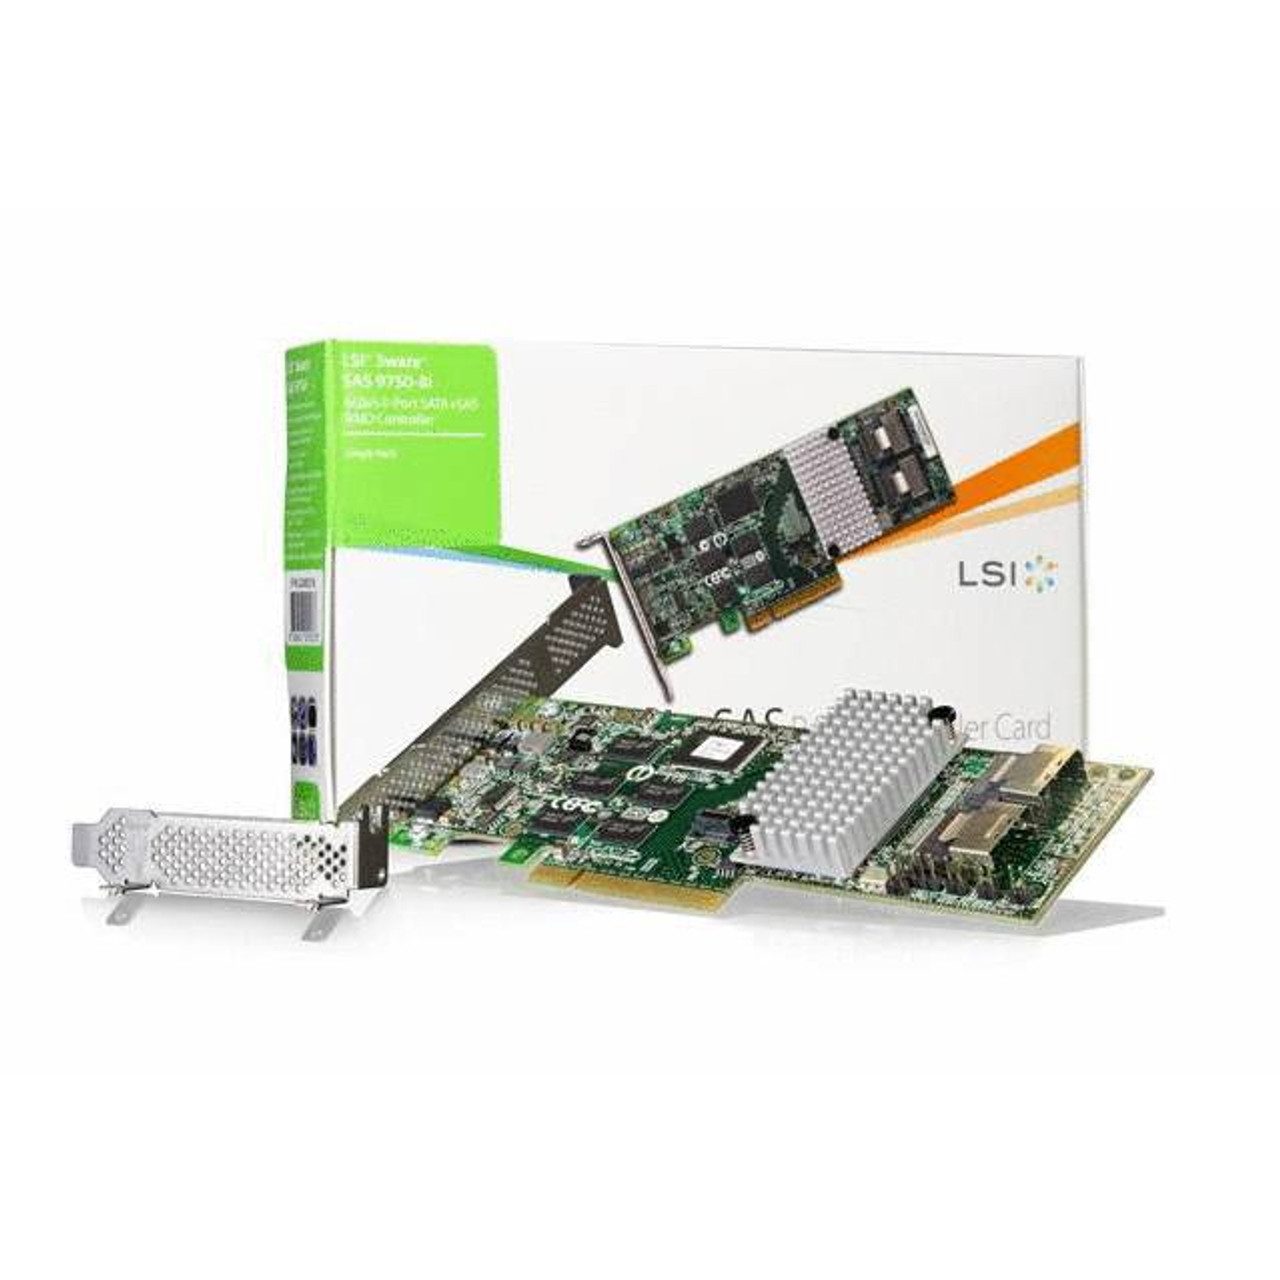 Broadcom LSI LSI00214 (9750-8I SGL) 8 Internal Ports PCI-E Low-Profile SATA/SAS RAID Controller